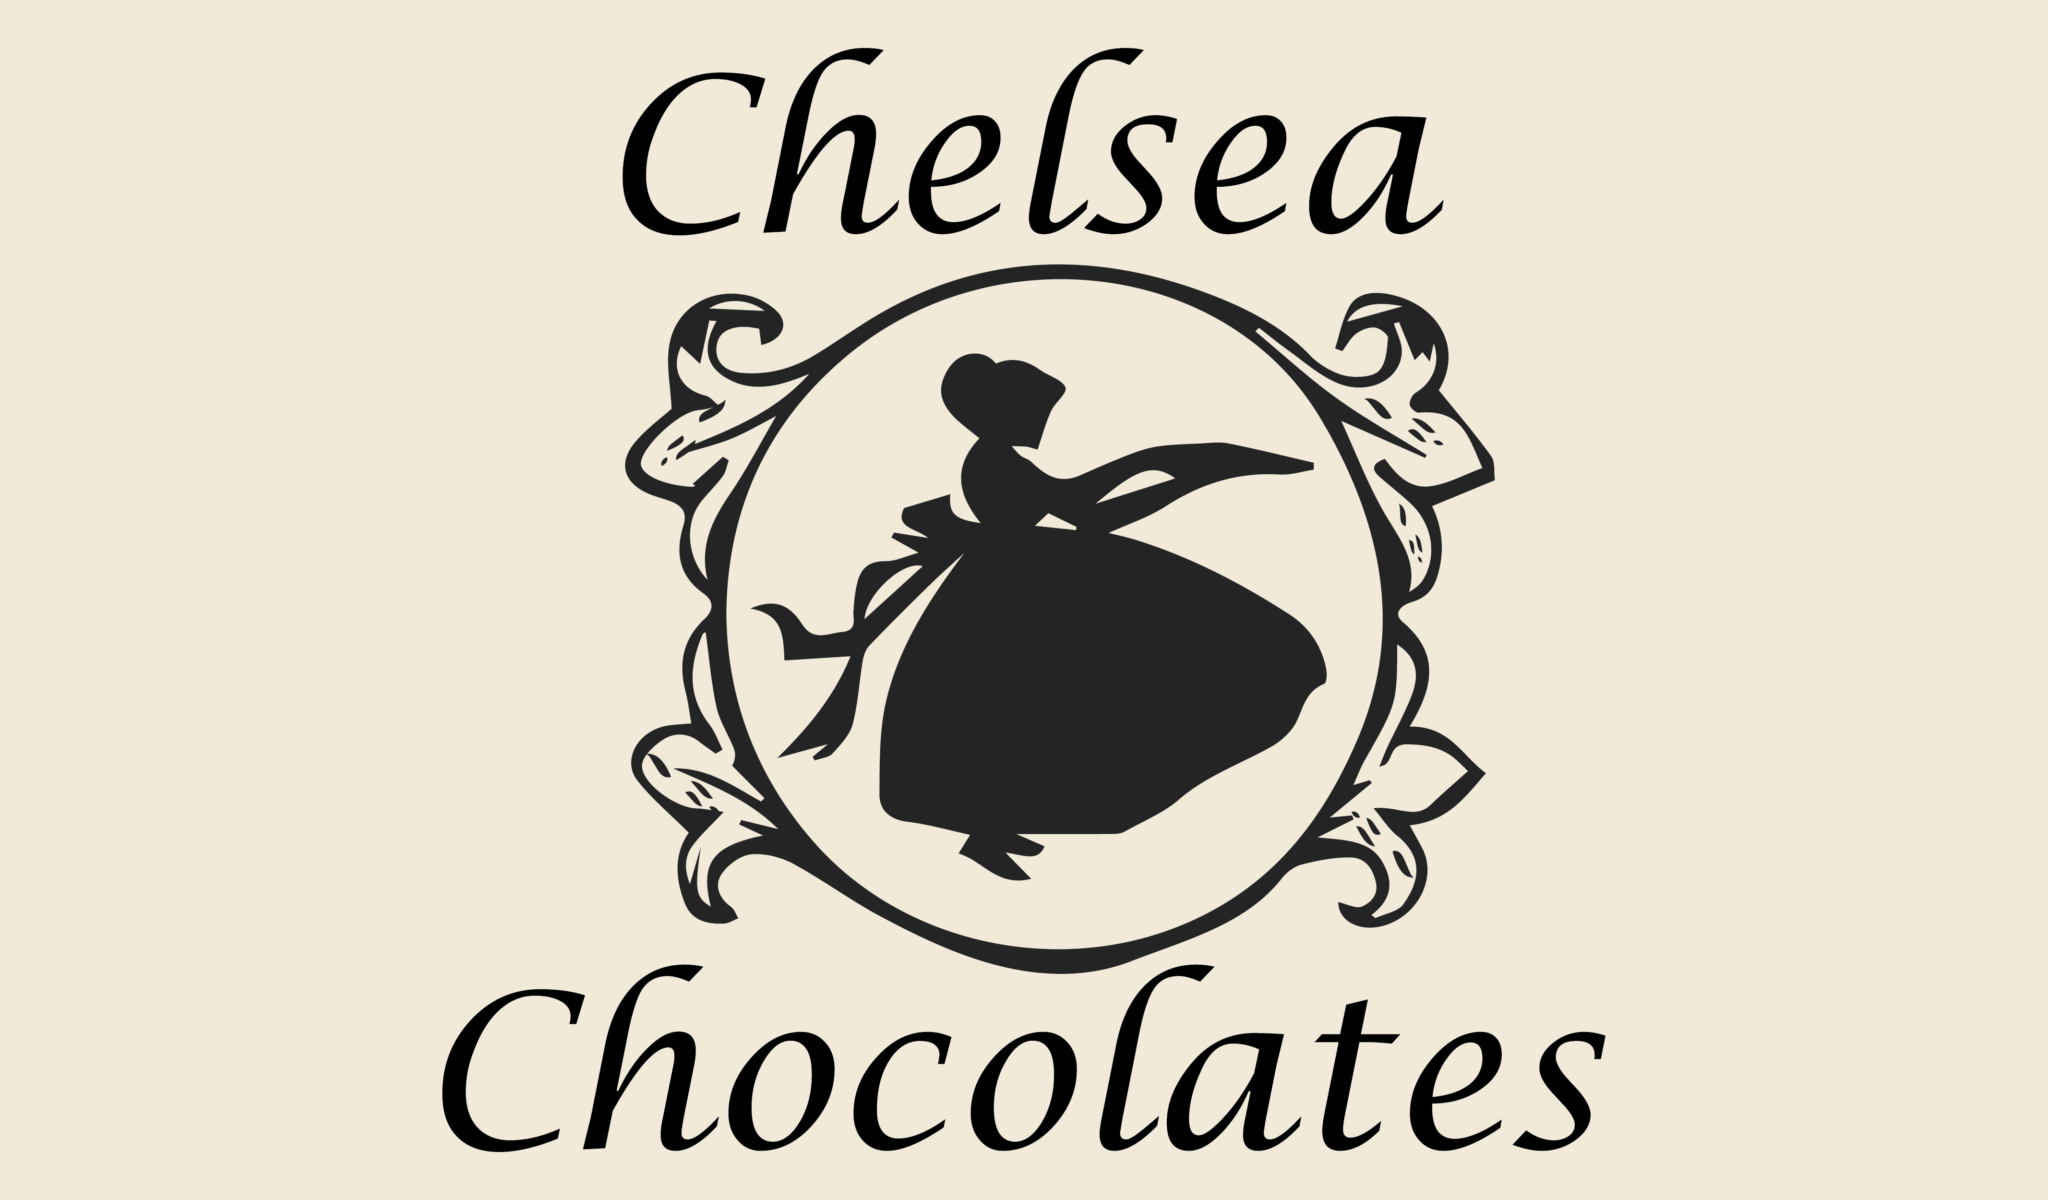 CHELSEA CHOCOLATES